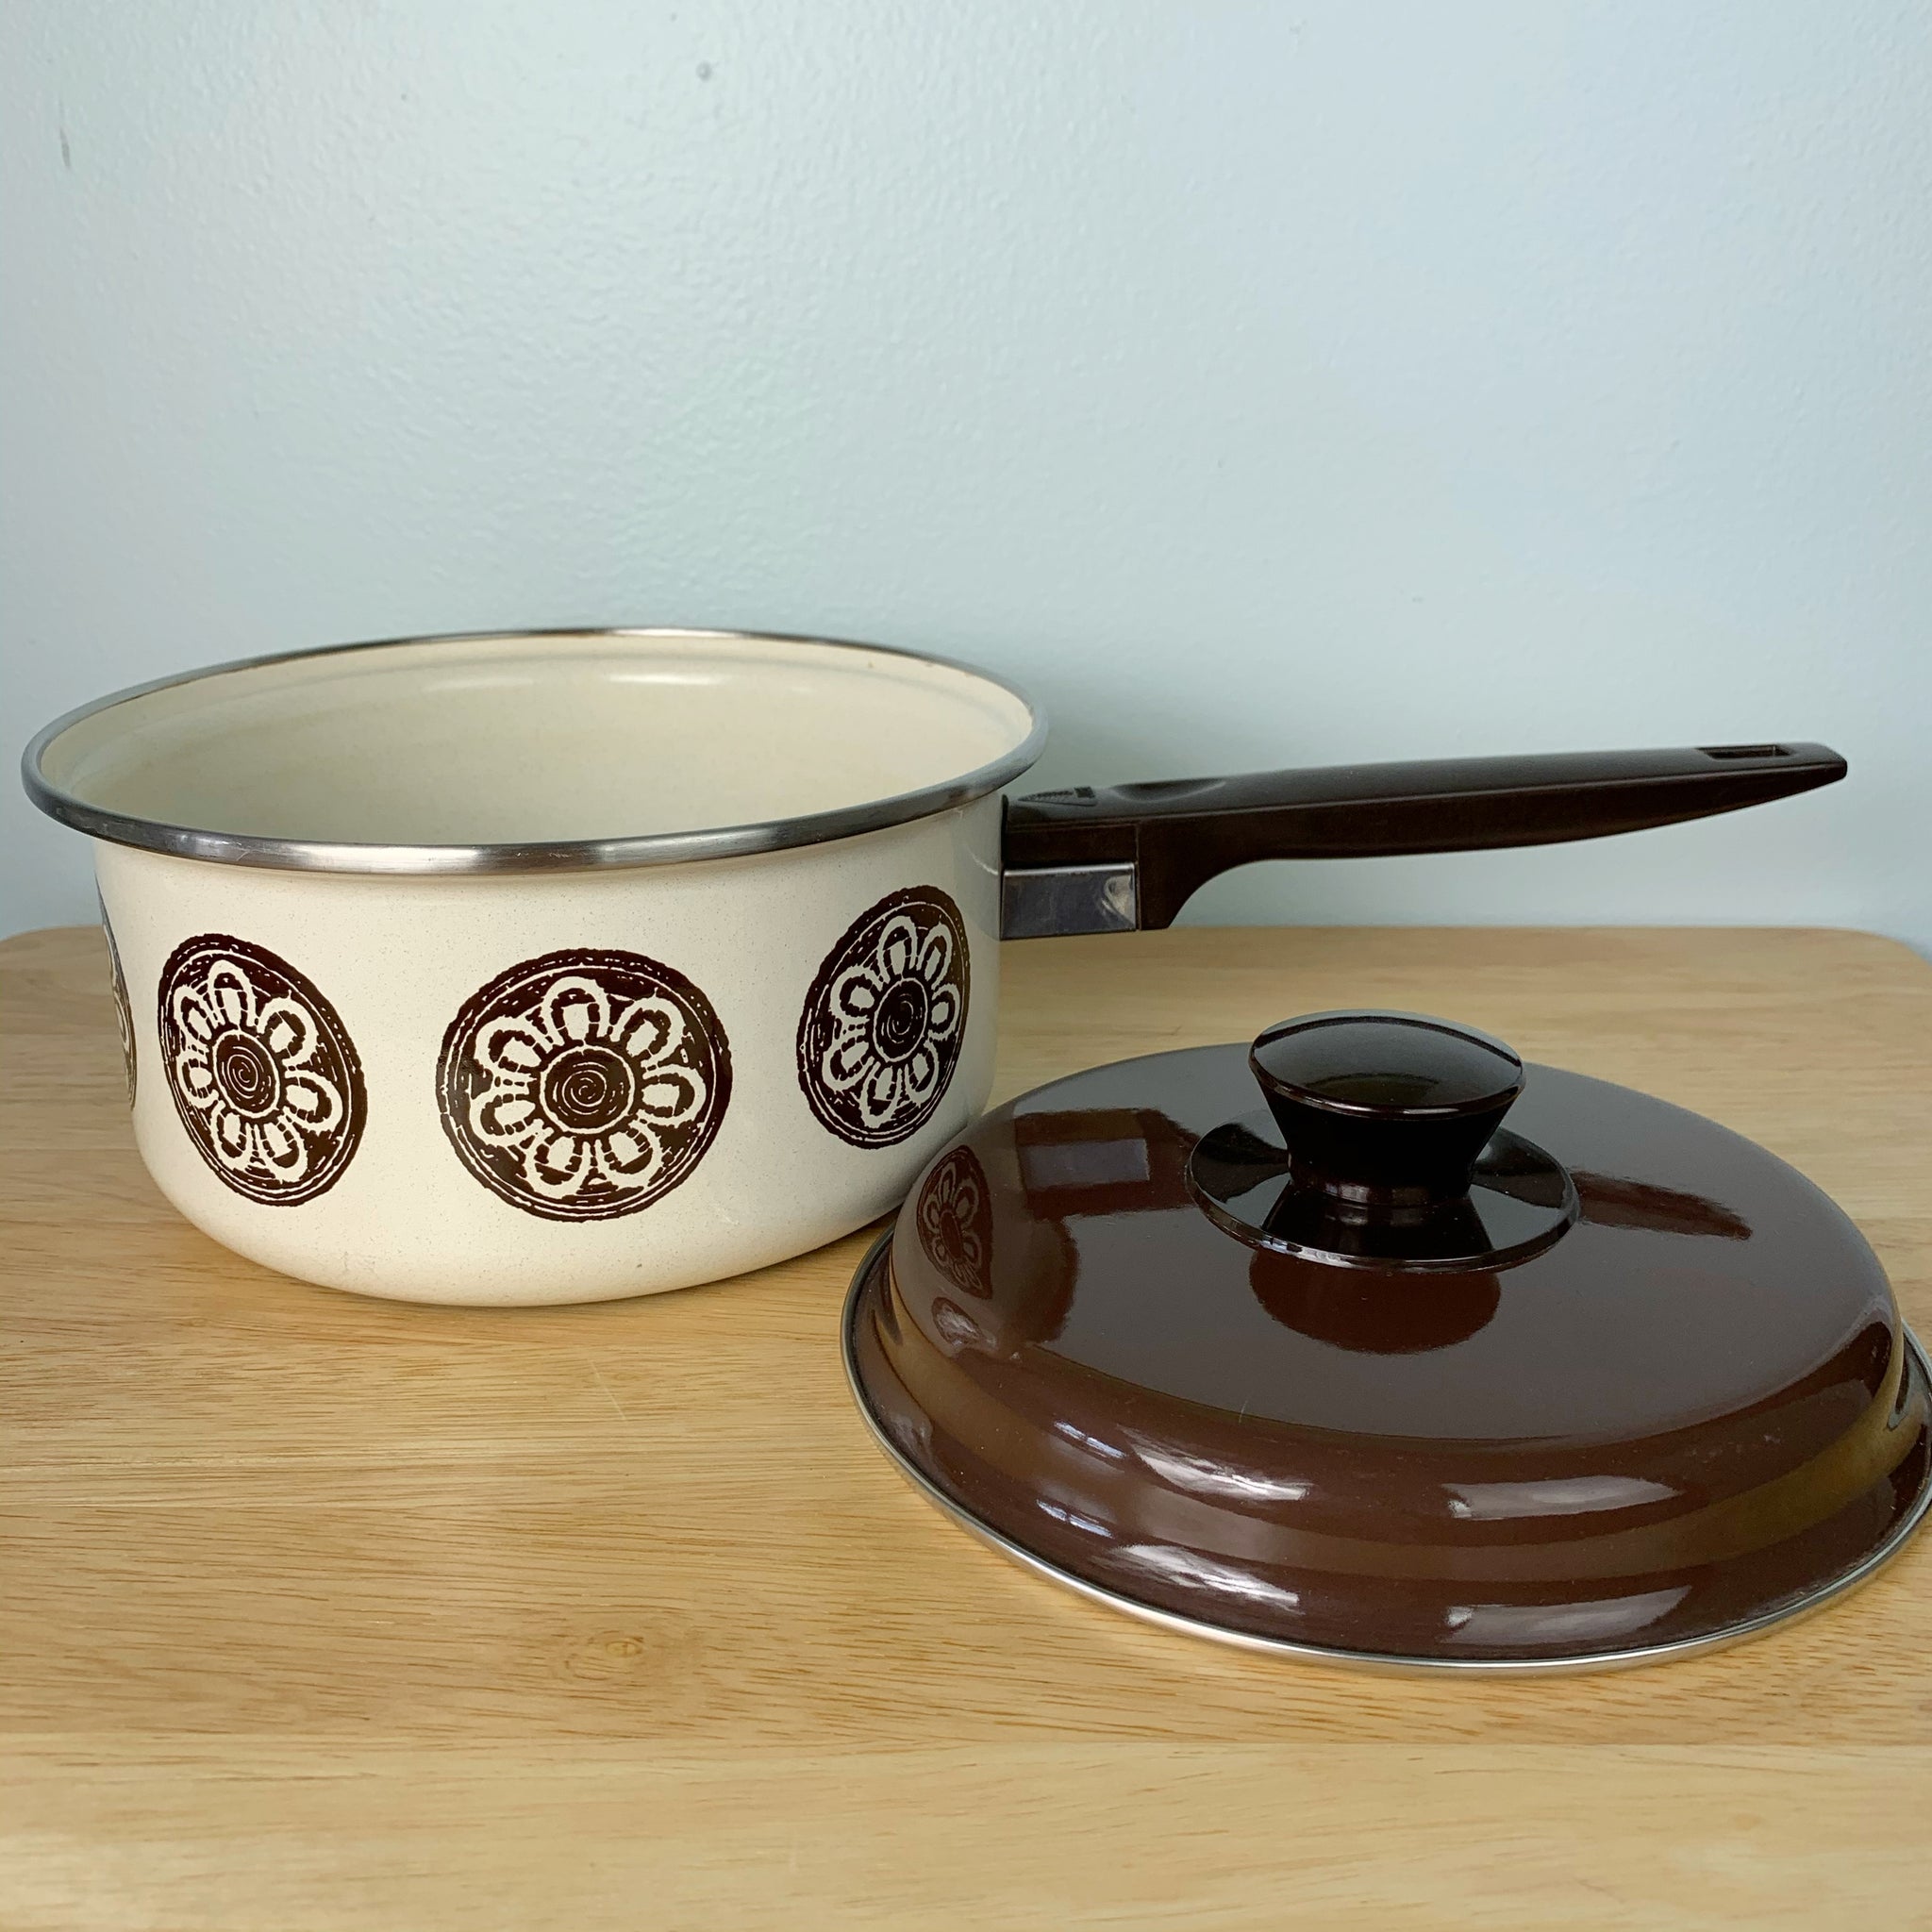 Vintage Black & White Enamelware Saucepan / Small Enamel Pot with Pour Spout